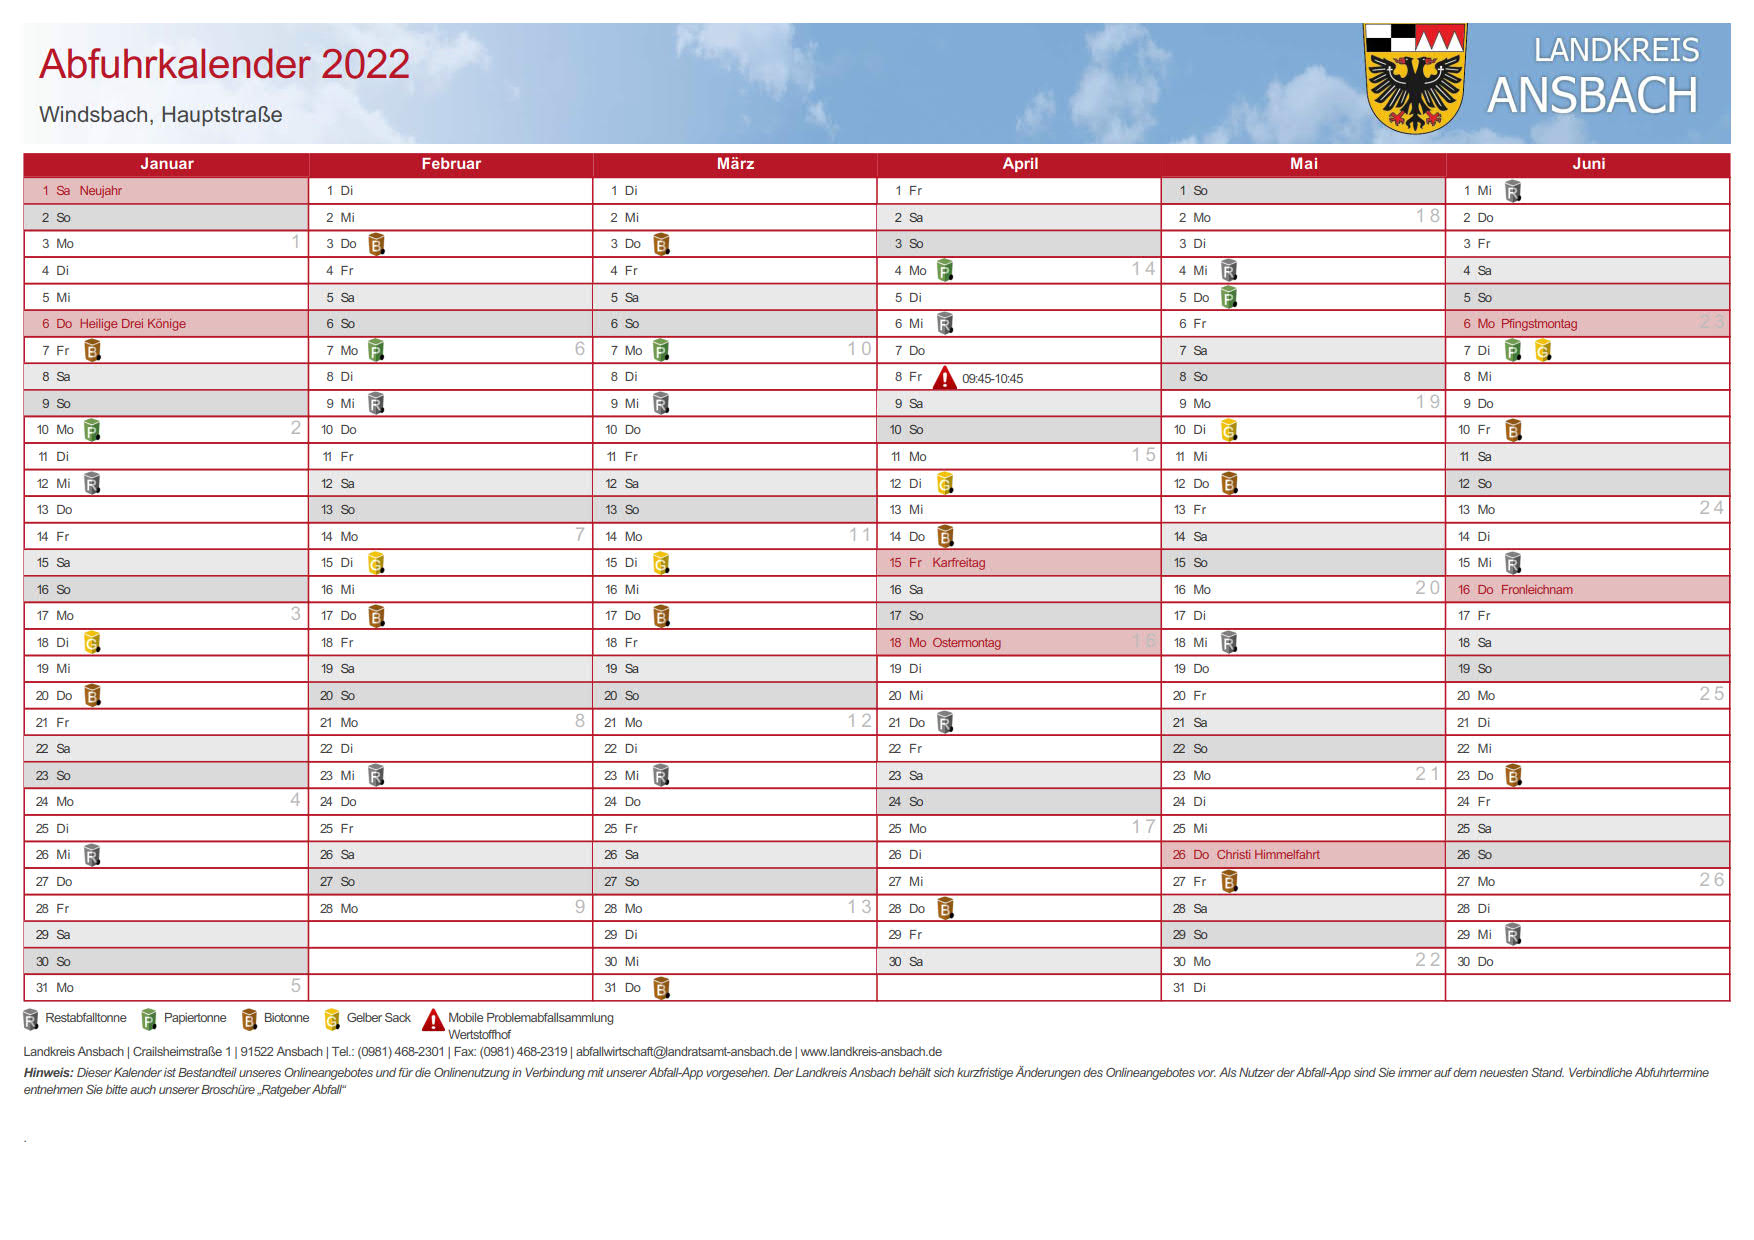  Abfuhrkalender Windsbach 1.Halbjahr 2022 